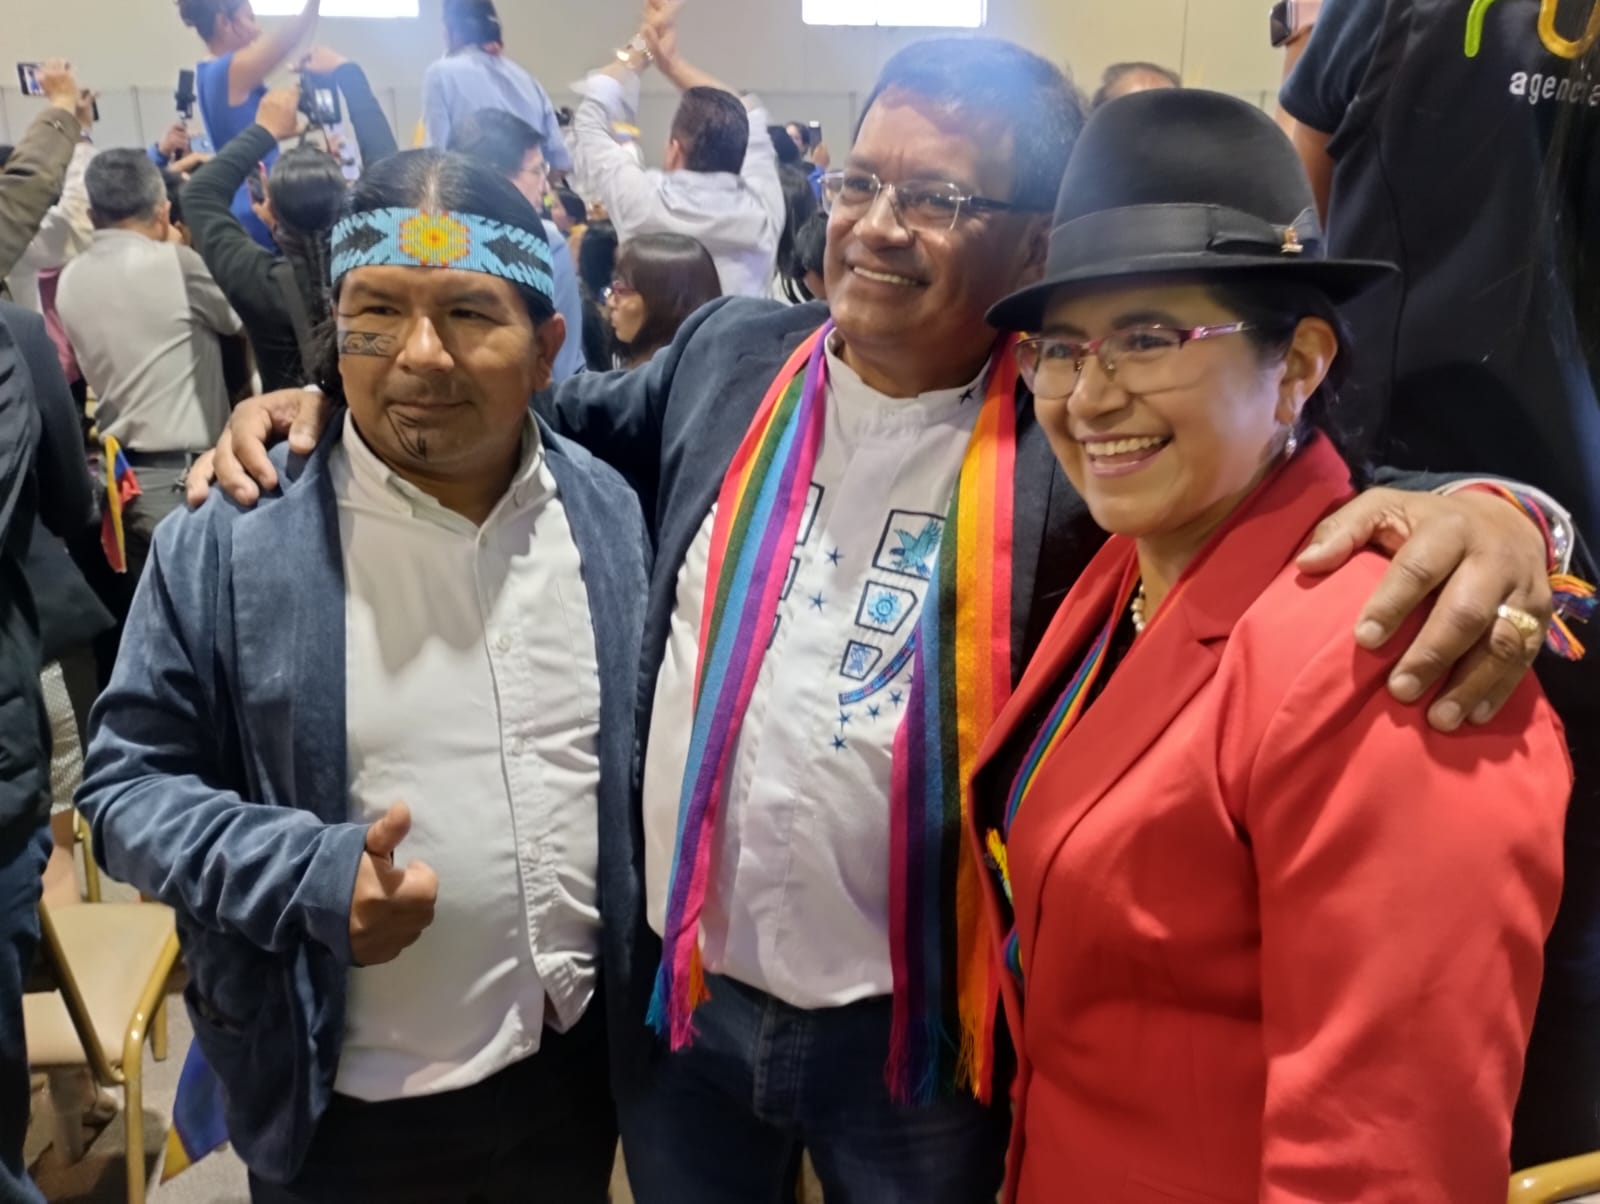 DIVISIÓN. Dirigentes del Movimiento Pachakutik acompañaron la presentación del plan de gobierno de Yaku Pérez. (DLH)